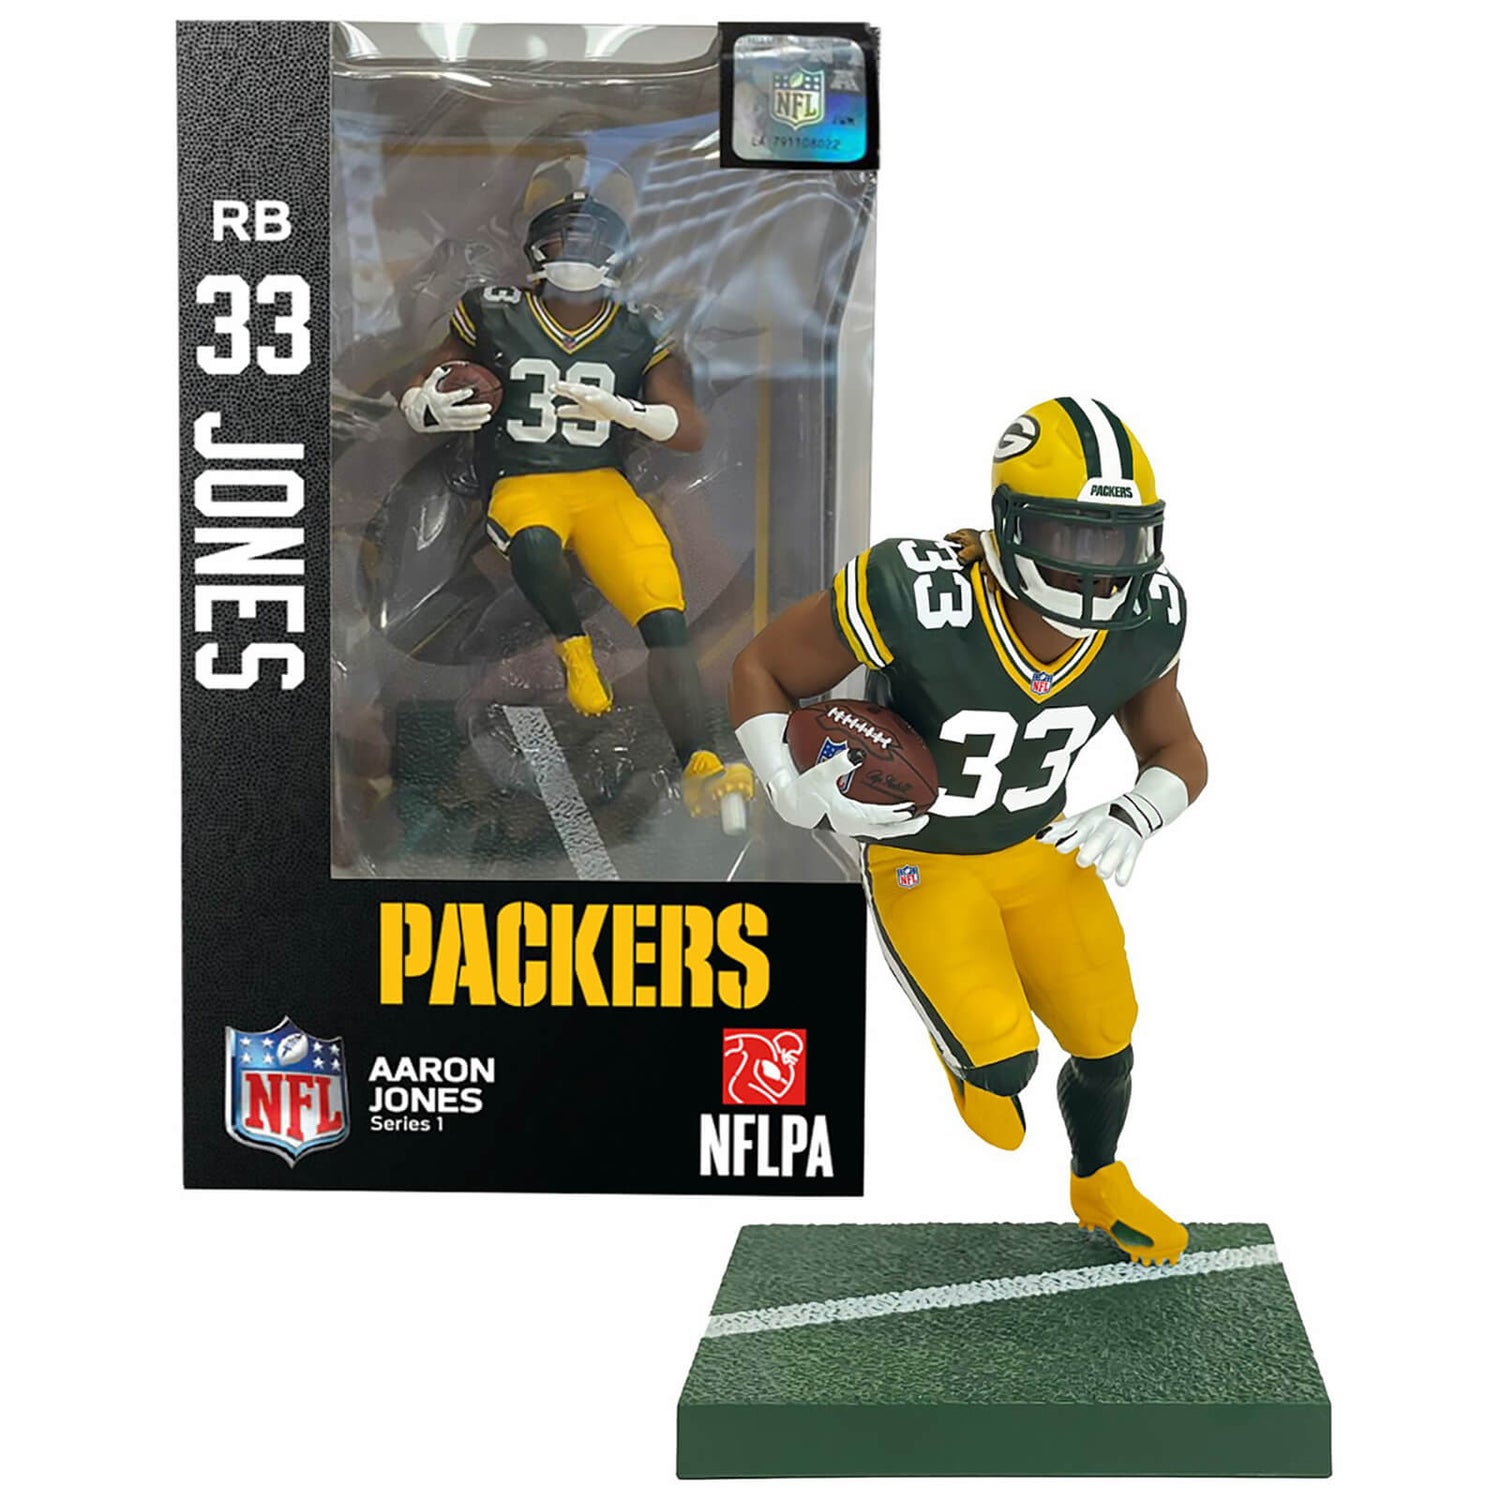 NFL Green Bay Packers 7" Action Figure - Aaron Jones